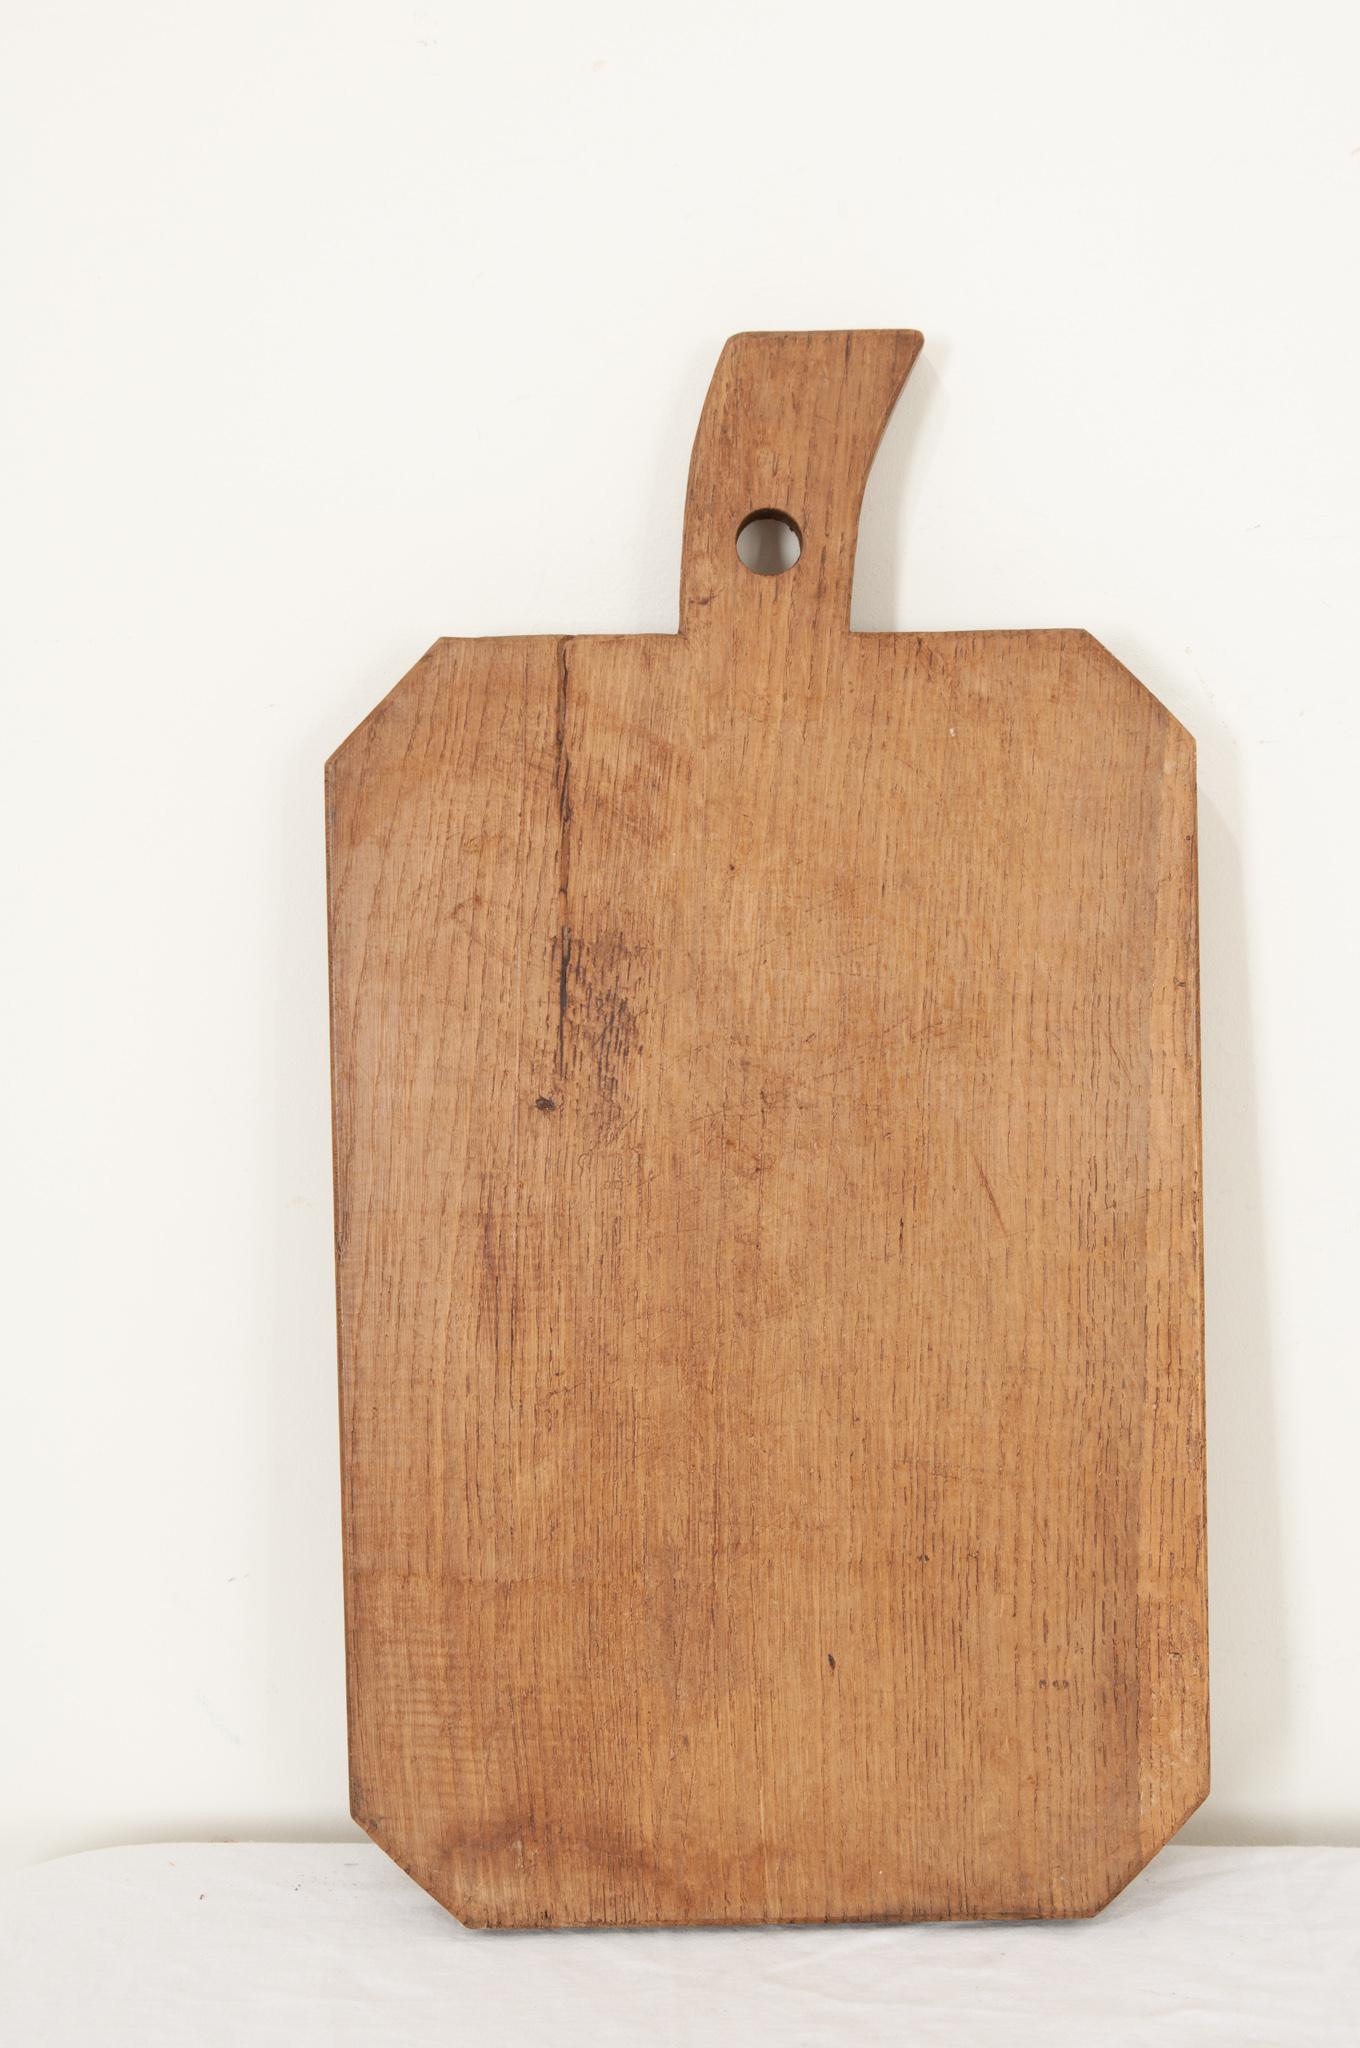 Ein großes Holzschneidebrett aus Frankreich in einer interessanten Form mit abgeschrägten Ecken und einem Griff in Form eines Stiels. Messerabdrücke und Kratzer, die von längst verstorbenen Köchen hinterlassen wurden, sind zu sehen und zu spüren,